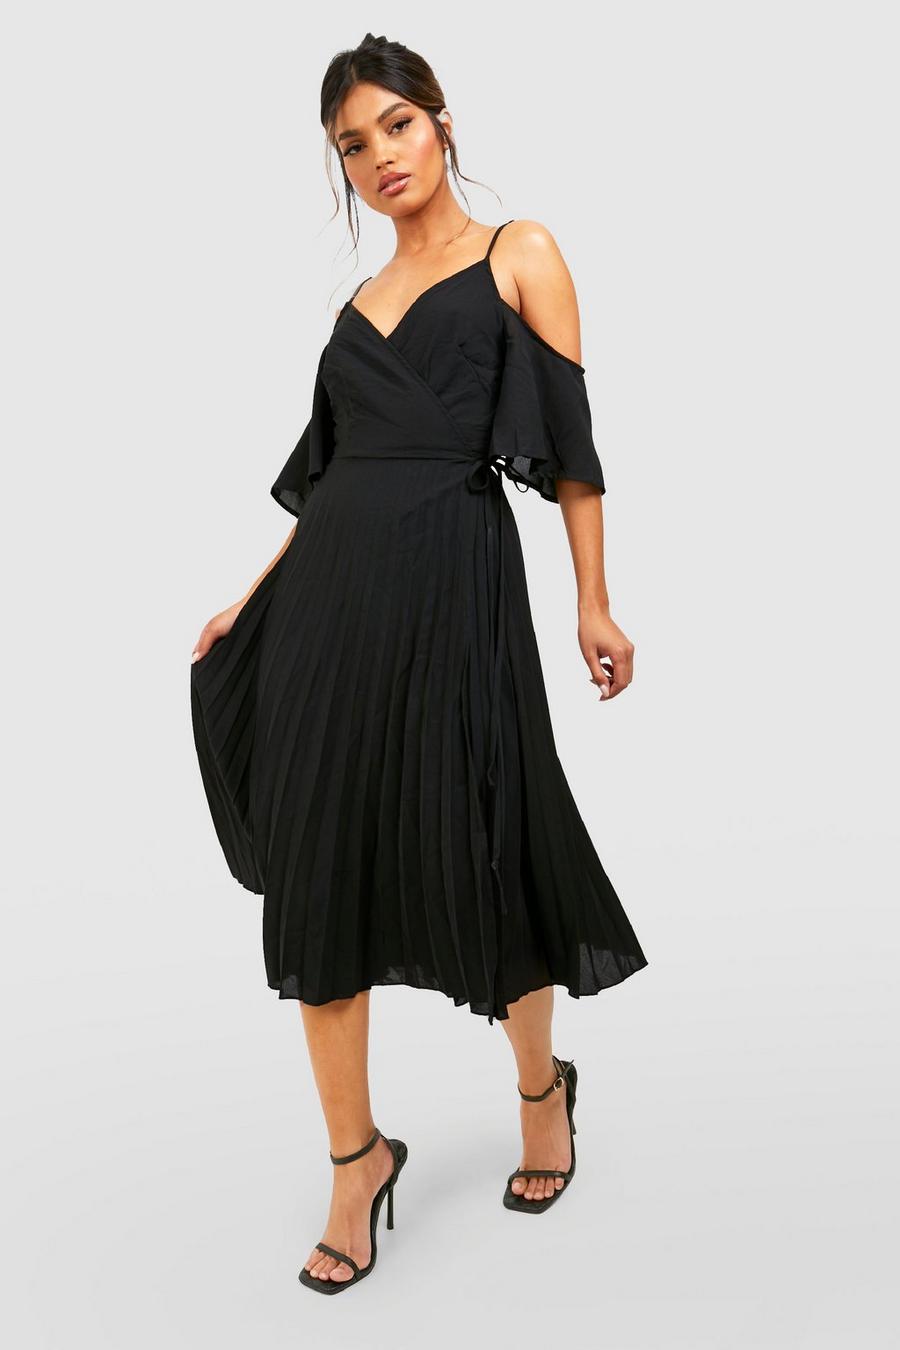 שחור negro שמלת מידי סקייטר ארוגה לשושבינה עם קפלים בכתף image number 1